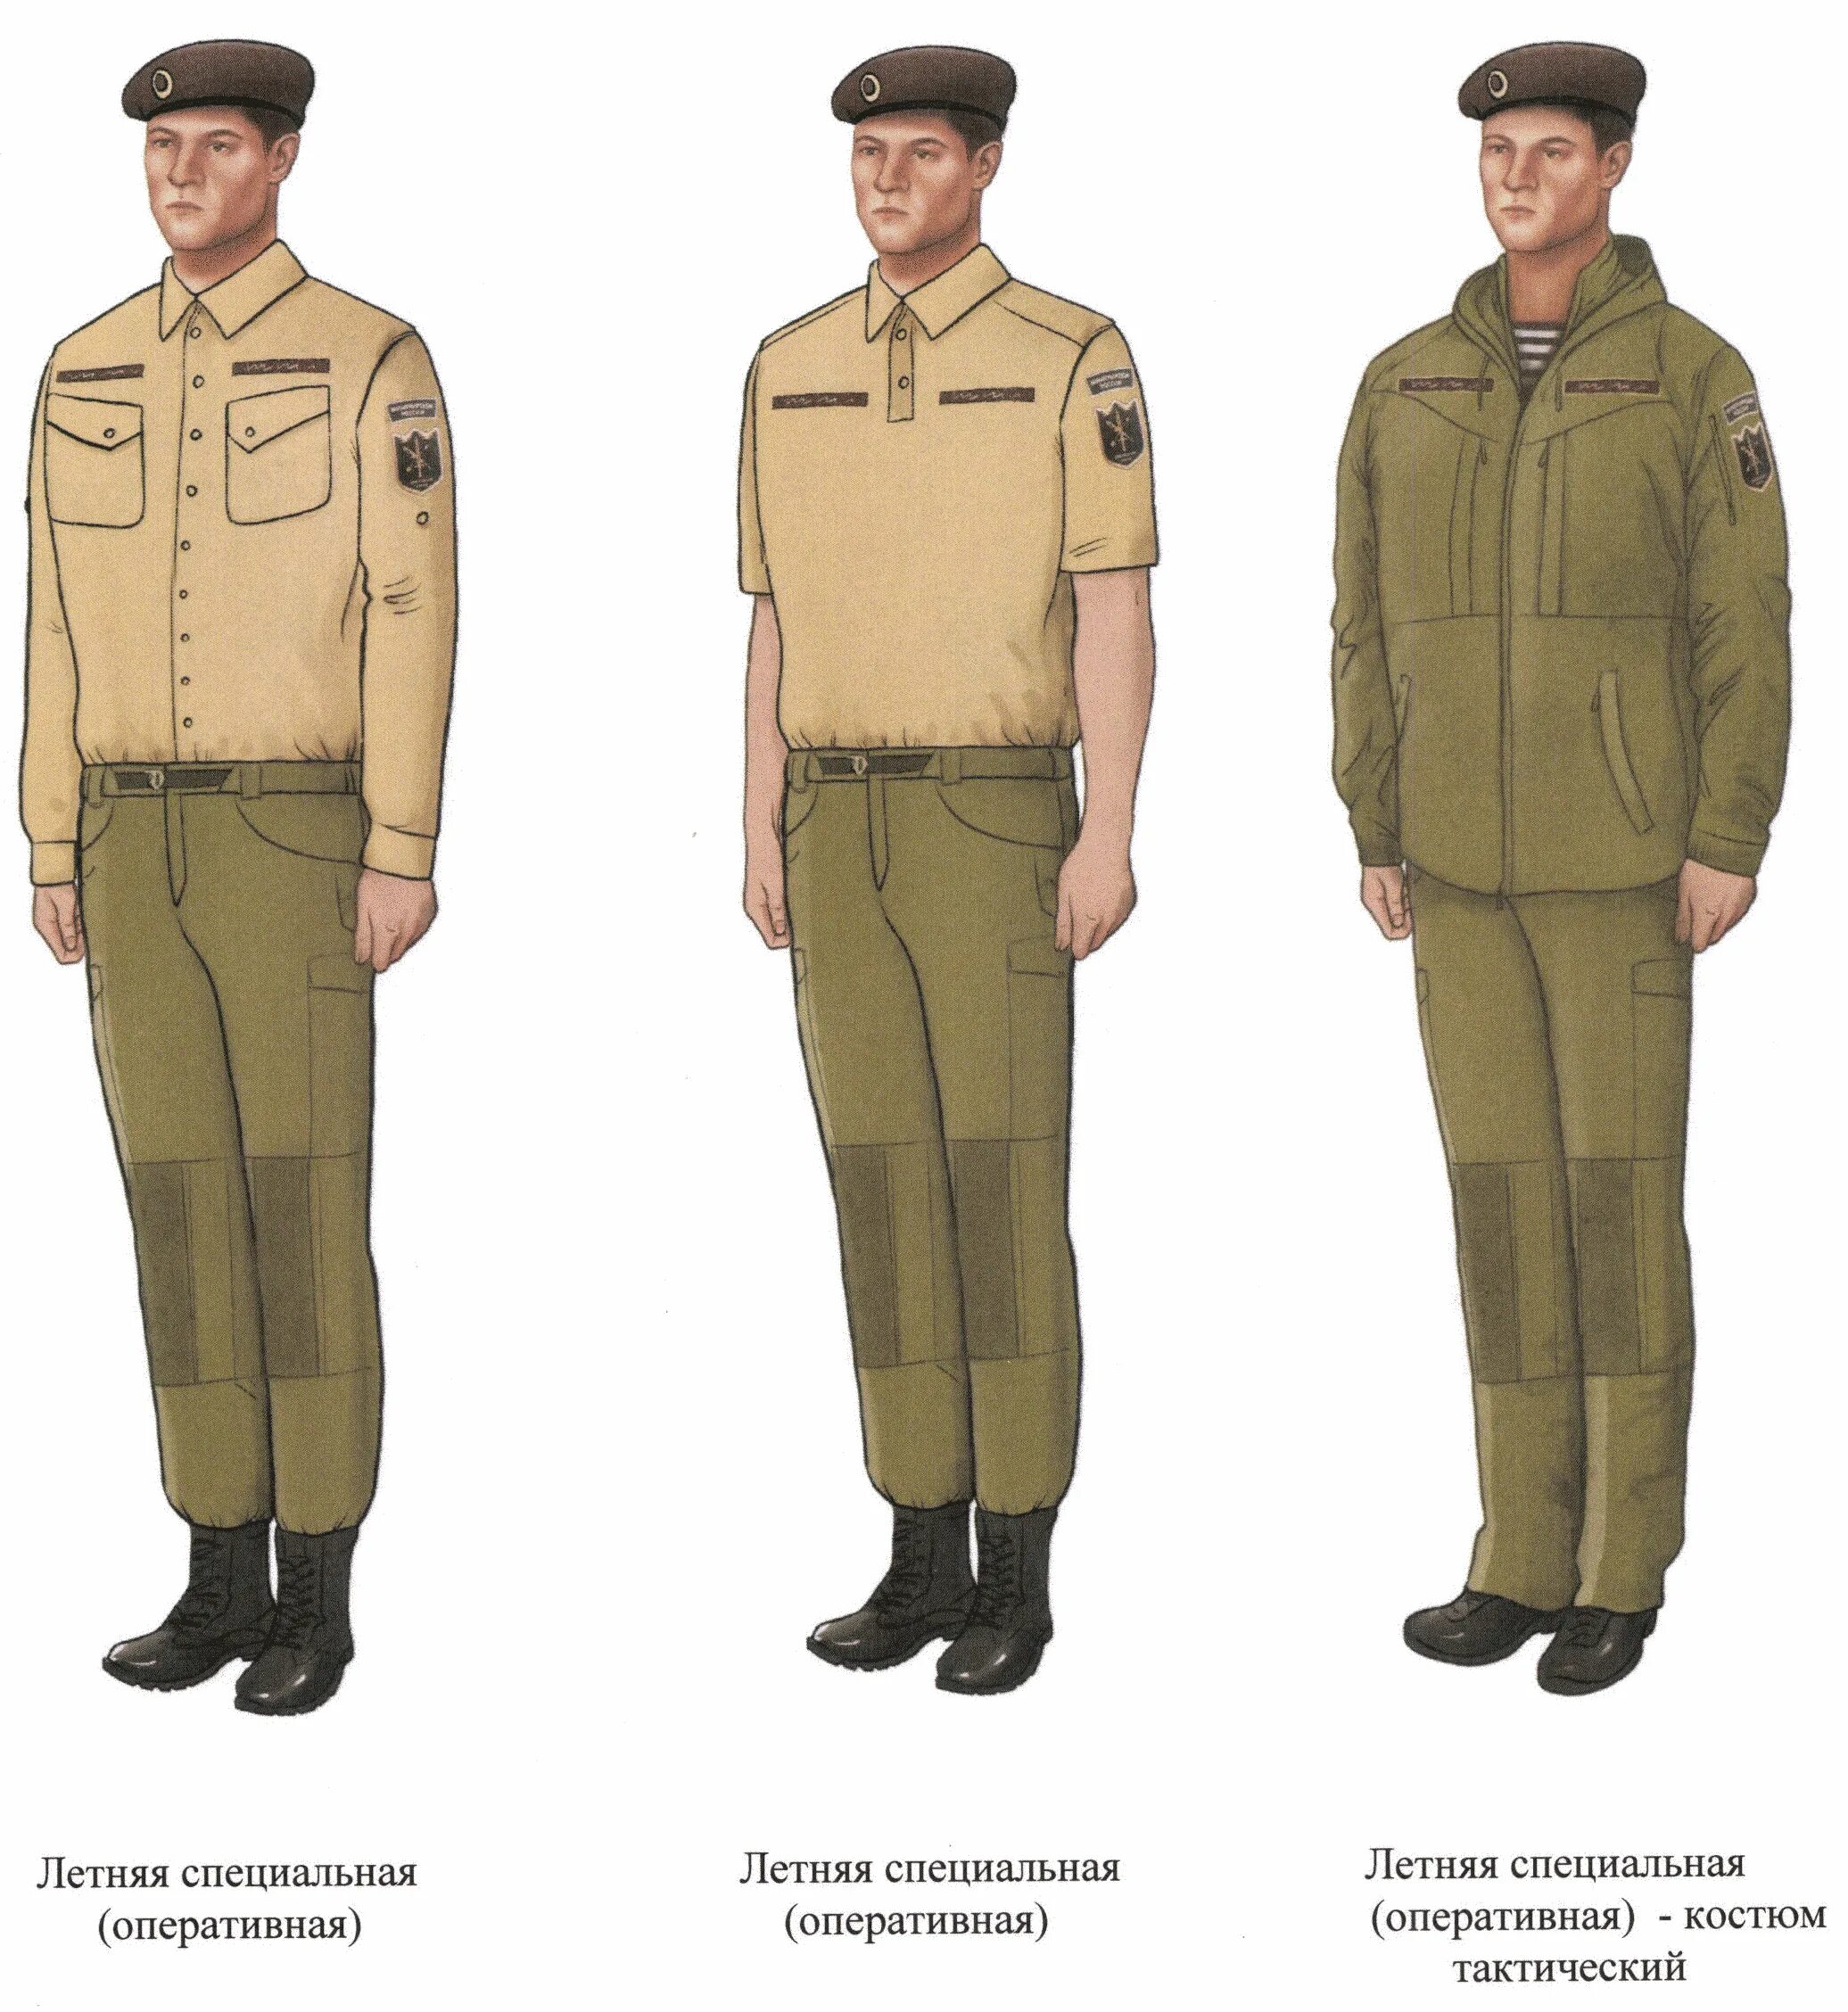 Через специальную форму. Форменная одежда. Специальная и форменная одежда. Образцы форменной одежды. Форма одежды в армии.